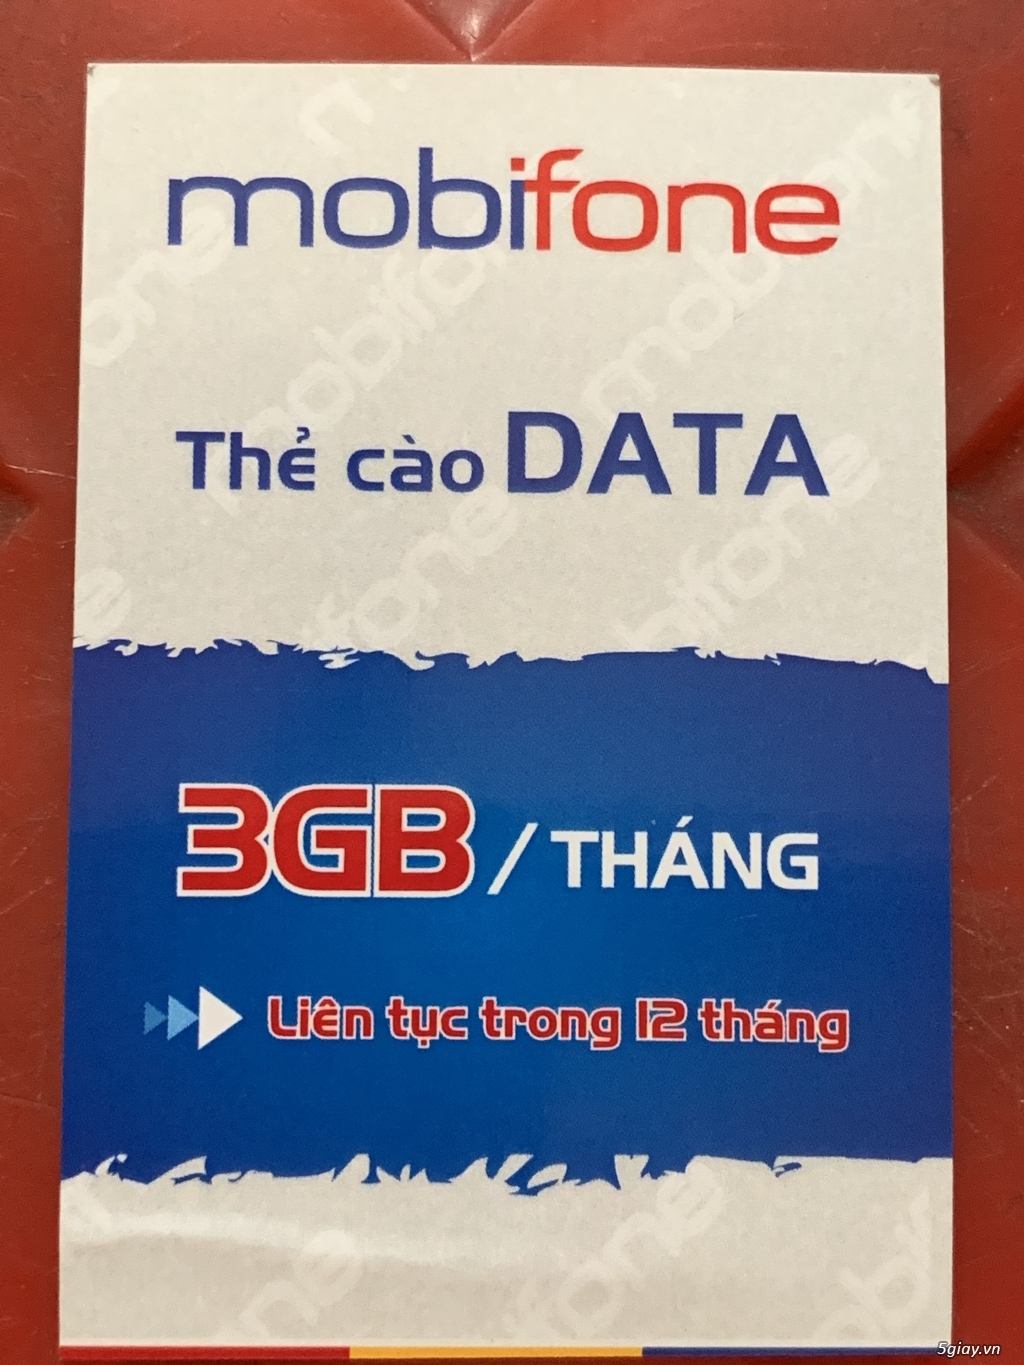 Thẻ cào Data 4G Mobifone 3Gb x 12 tháng không cần nạp tiền, end 23h0002/01/2019